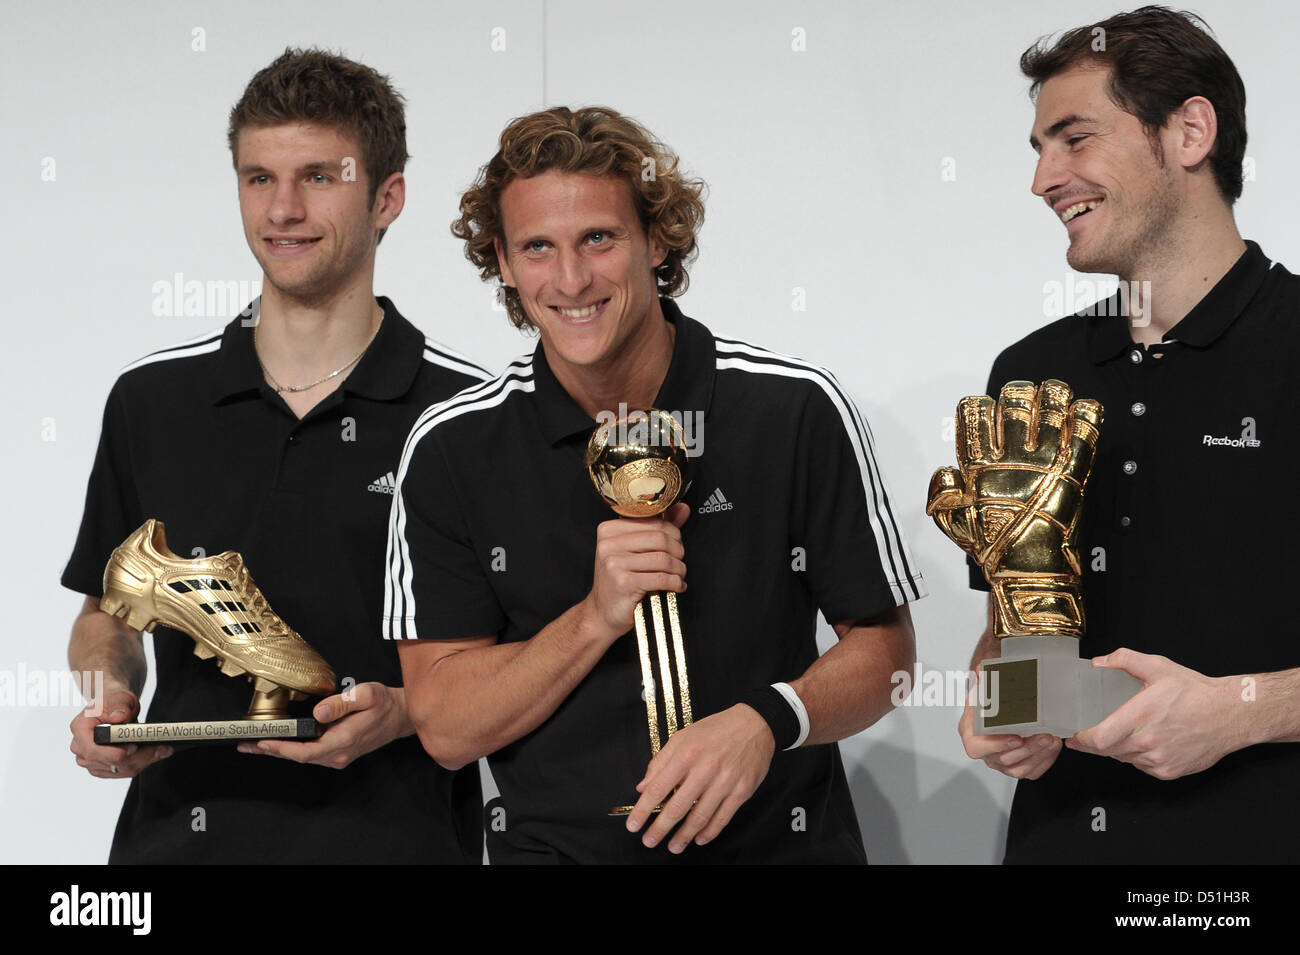 Les lauréats de la Coupe du Monde FIFA 2010 prix posent avec leurs trophées  (L-R) Thomas Mueller avec Golden Boot pour meilleur goalgetter, Diego Forlan  avec ballon d or du meilleur joueur,